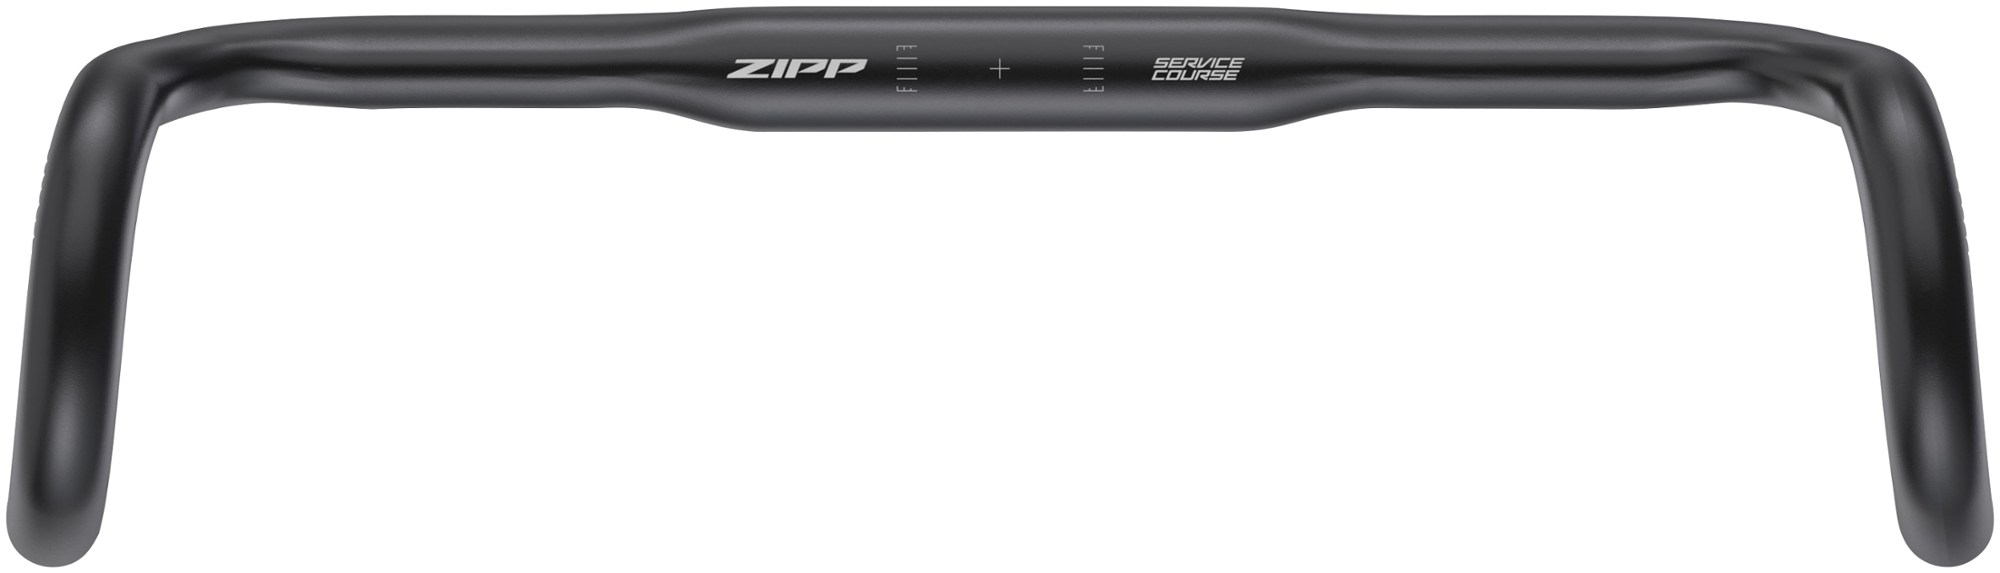 Курс обслуживания 70 Откидной руль XPLR Zipp, черный аэро руль sl 70 zipp черный